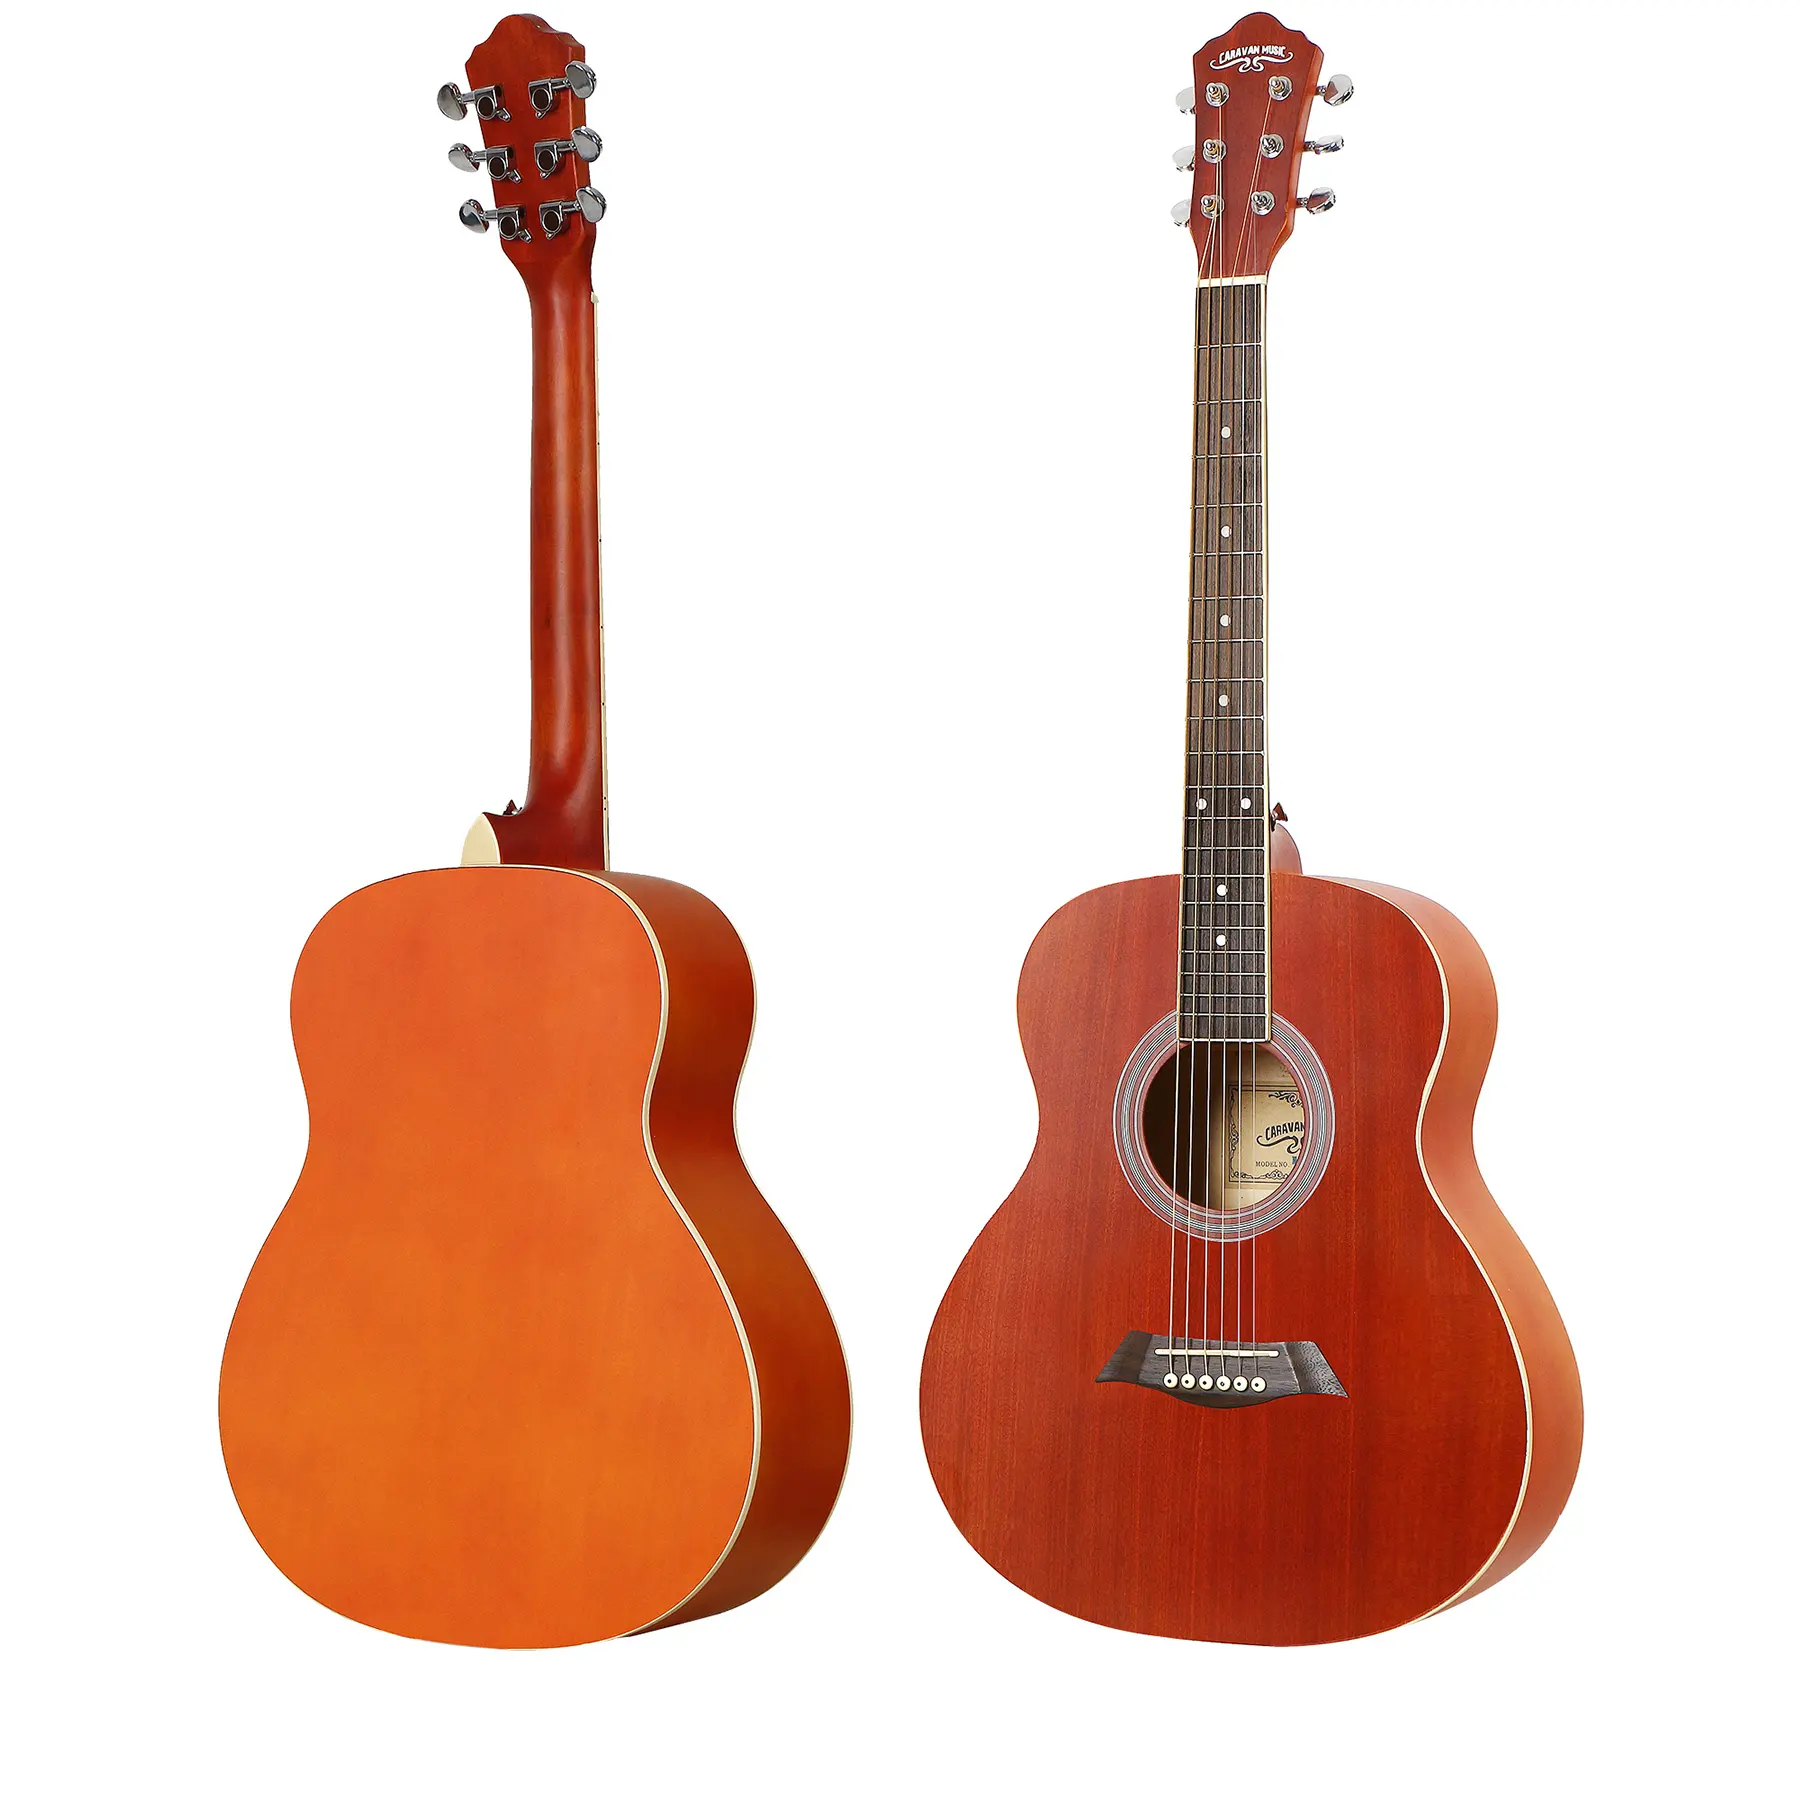 Sela colorida de aço do abs, fornecedor que joga 1.6 kg de peso, corda de aço, preço acústico 37 ", guitarra de singapura